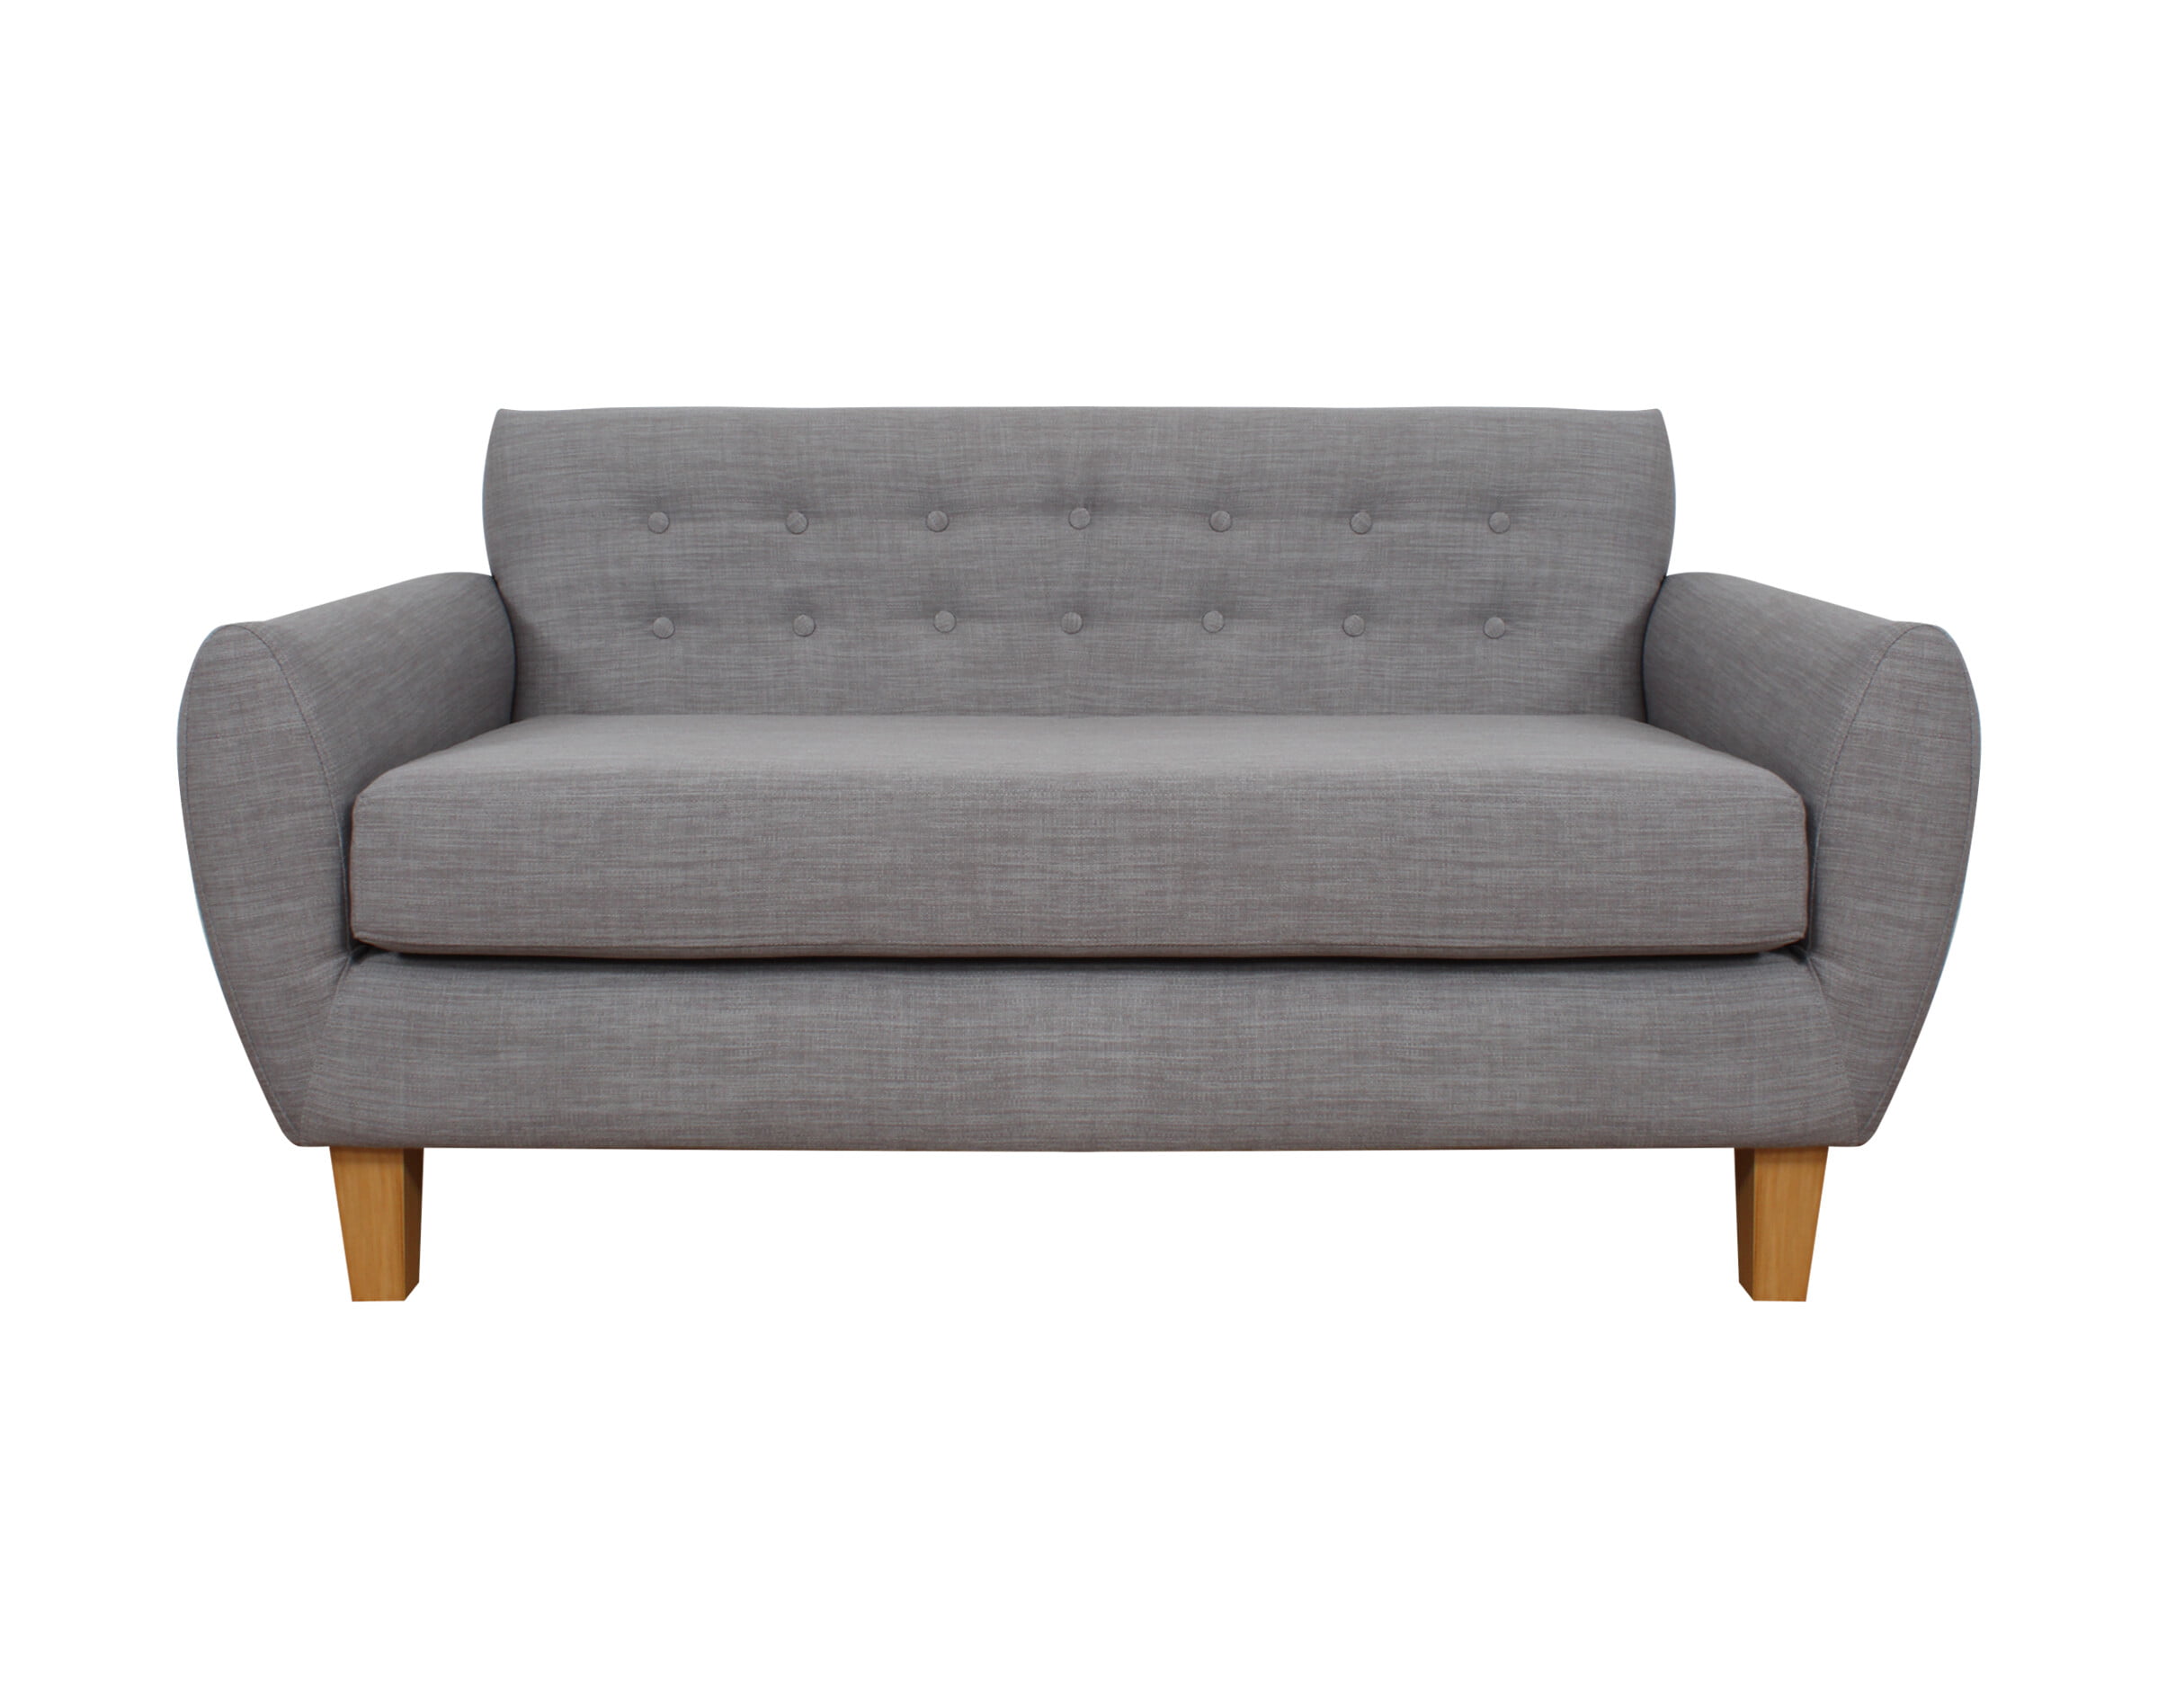 sofa amanda respaldo incorporado